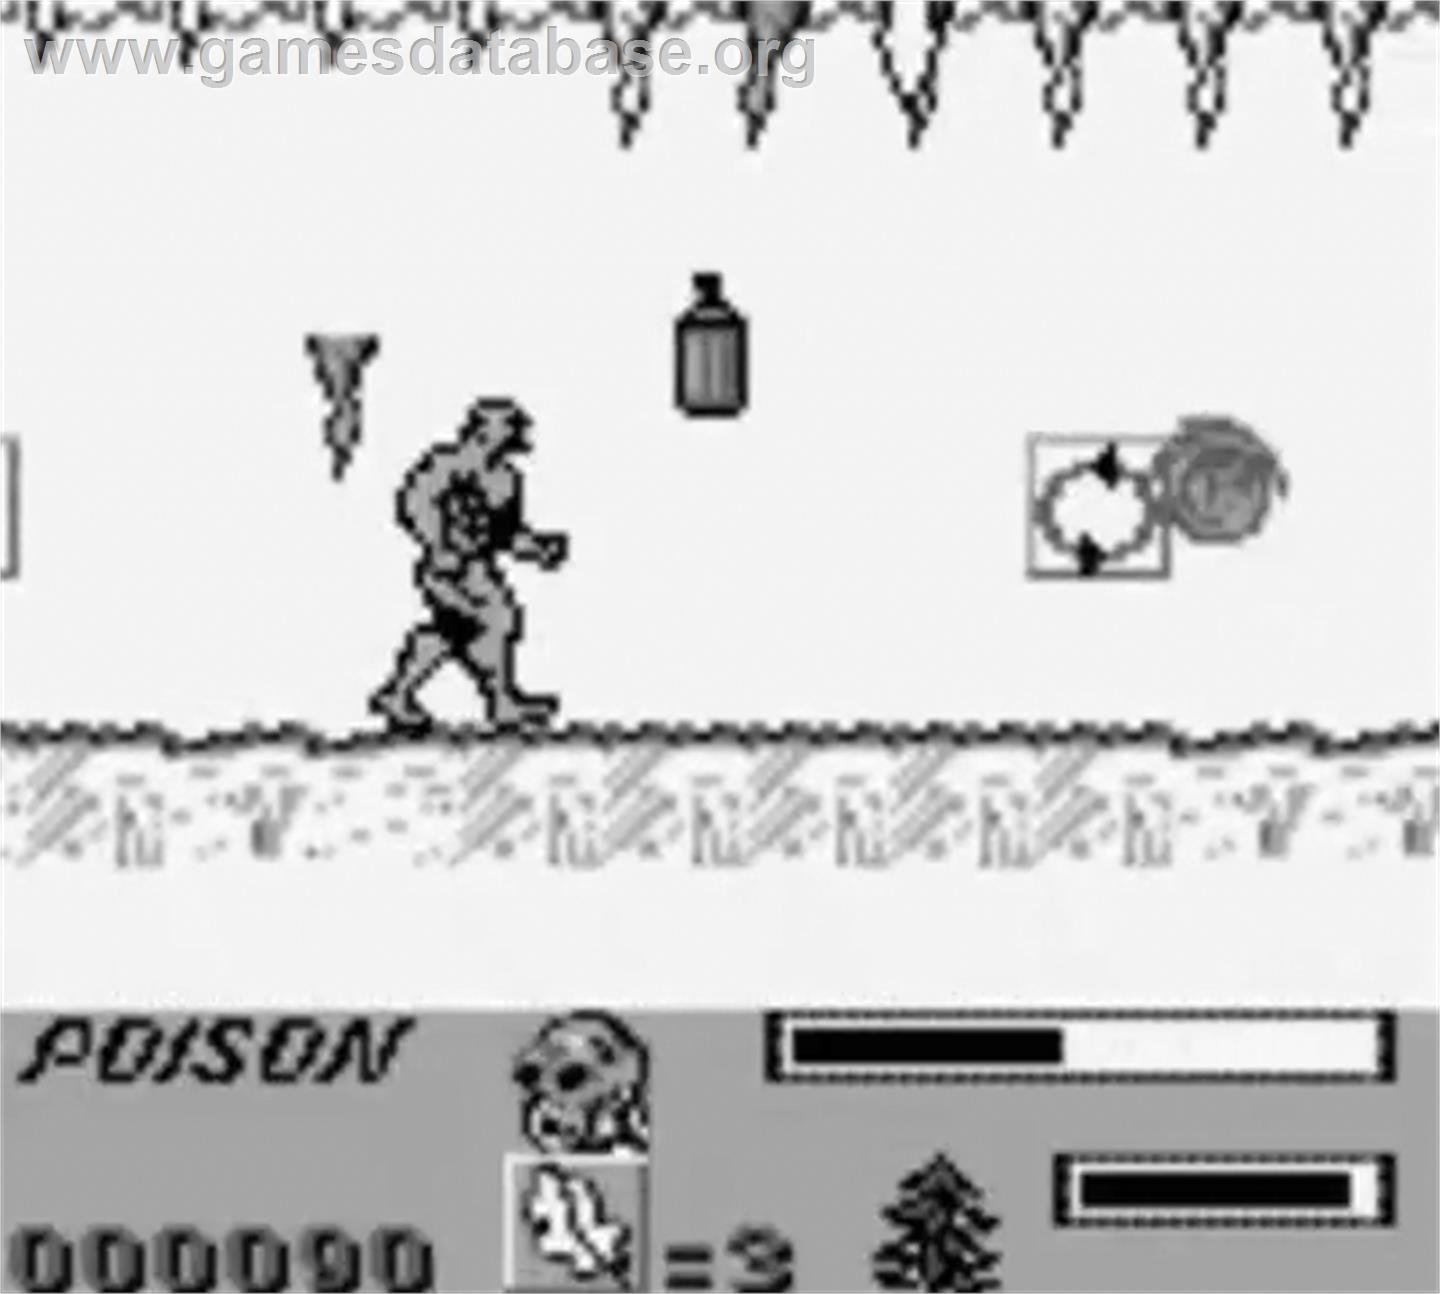 Swamp Thing - Nintendo Game Boy - Artwork - In Game